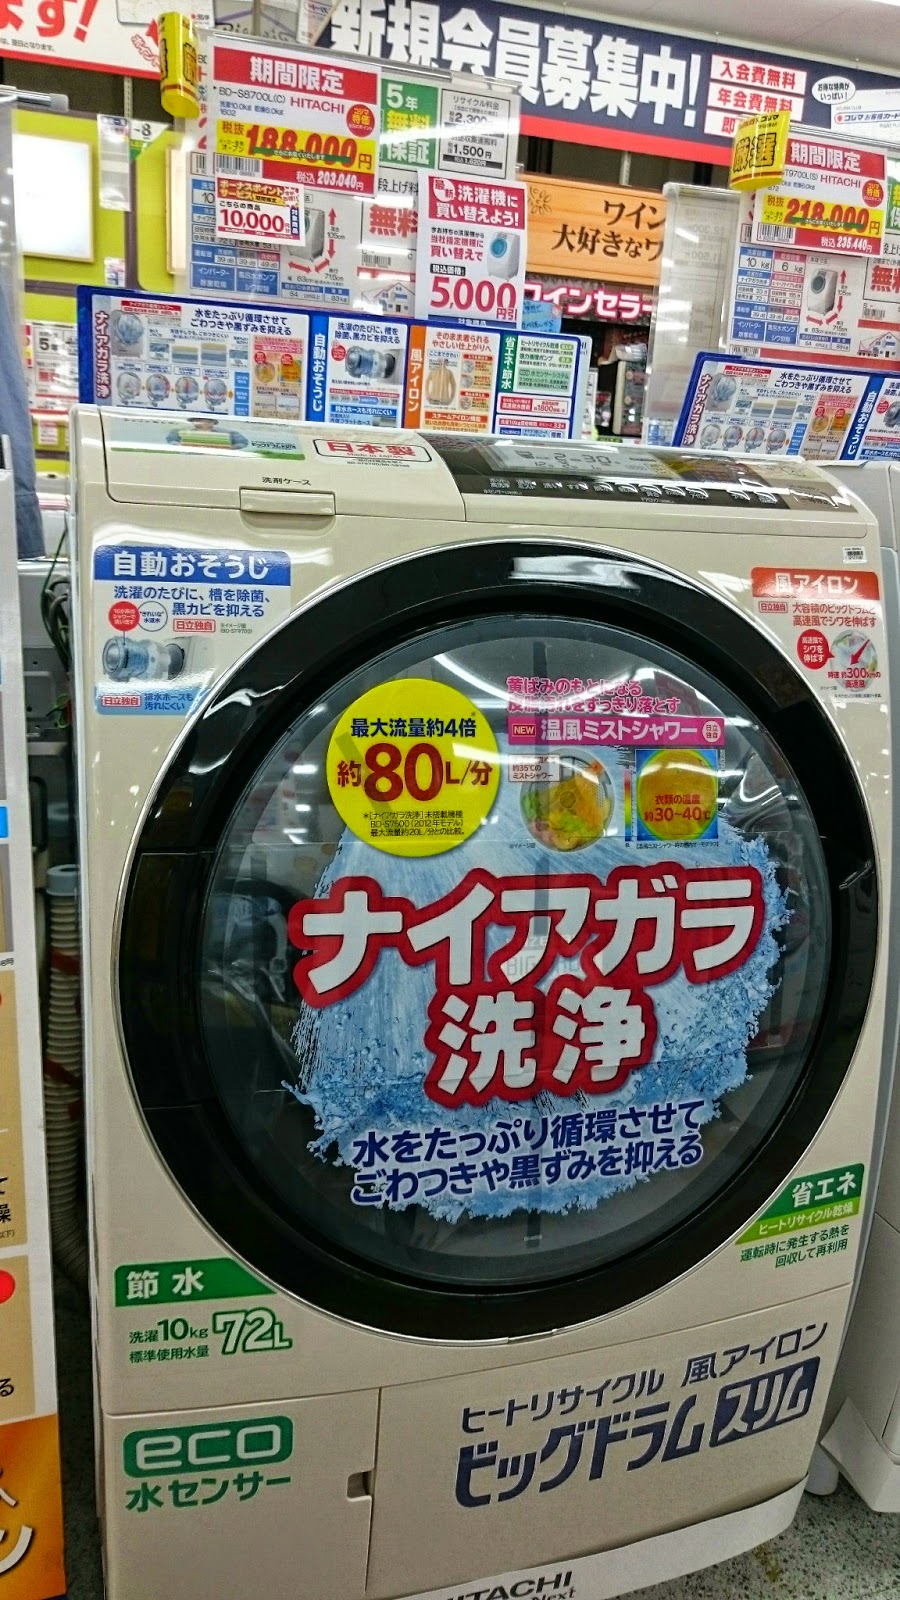 洗濯乾燥機 日立 ヒートリサイクル 風アイロン ビッグドラム スリム S8700l 購入 保険適用 好奇心旺盛なアマツ人blog